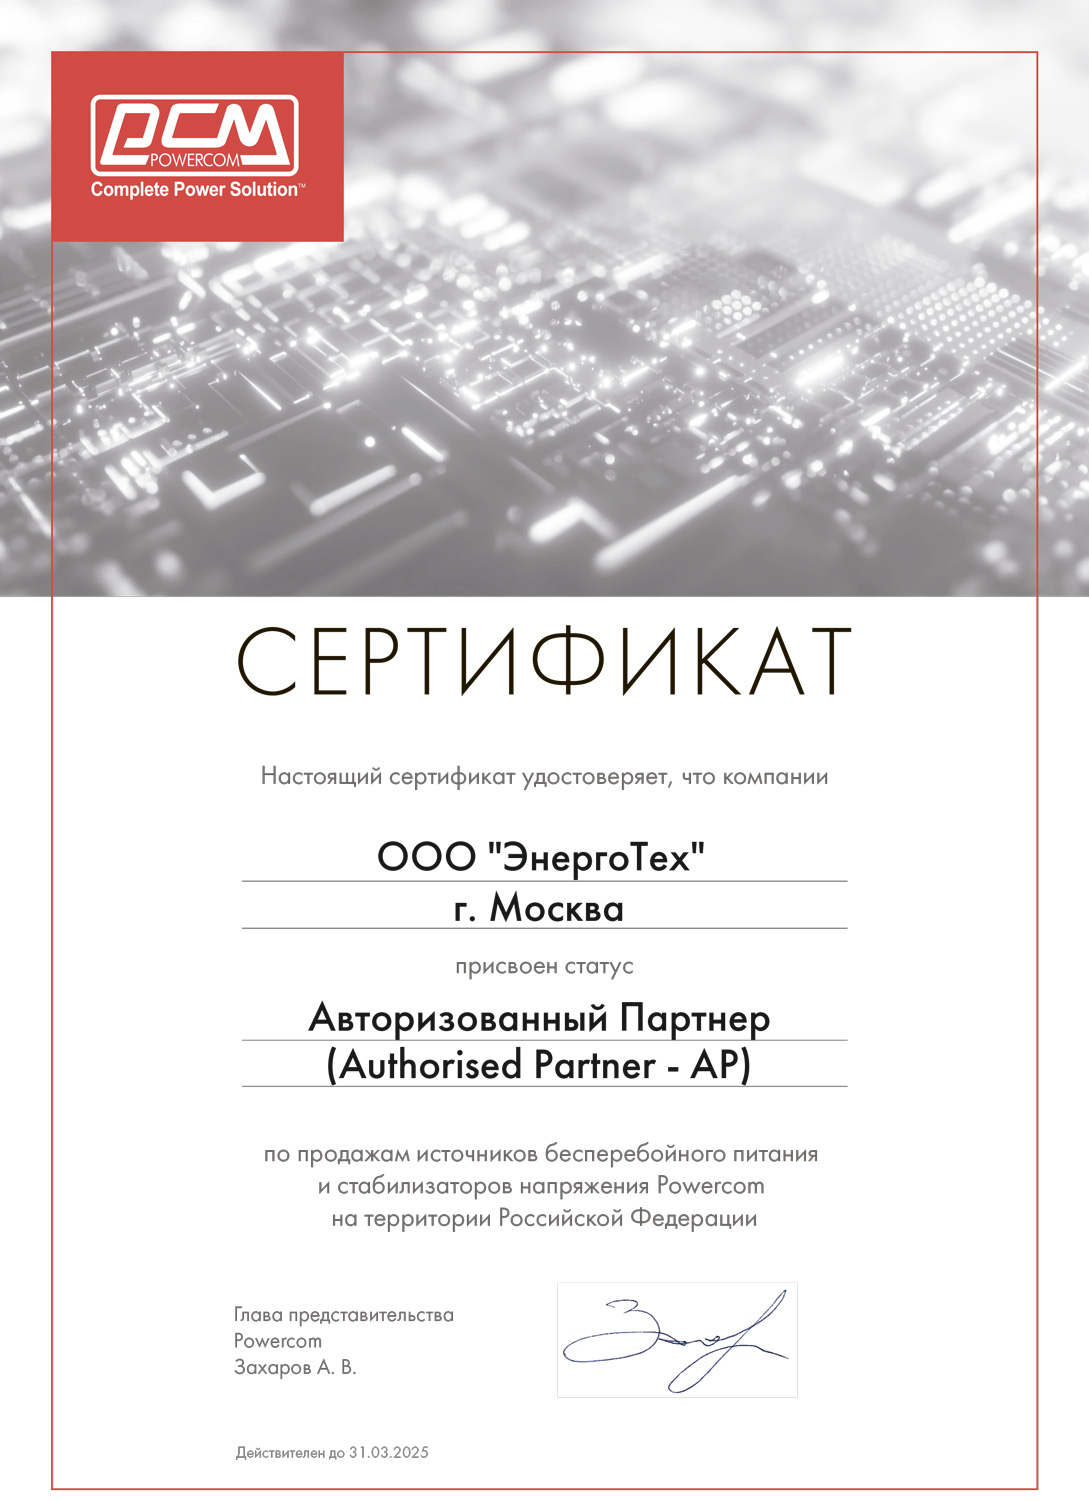 Сертификат авторизованного поставщика решений POWERCOM